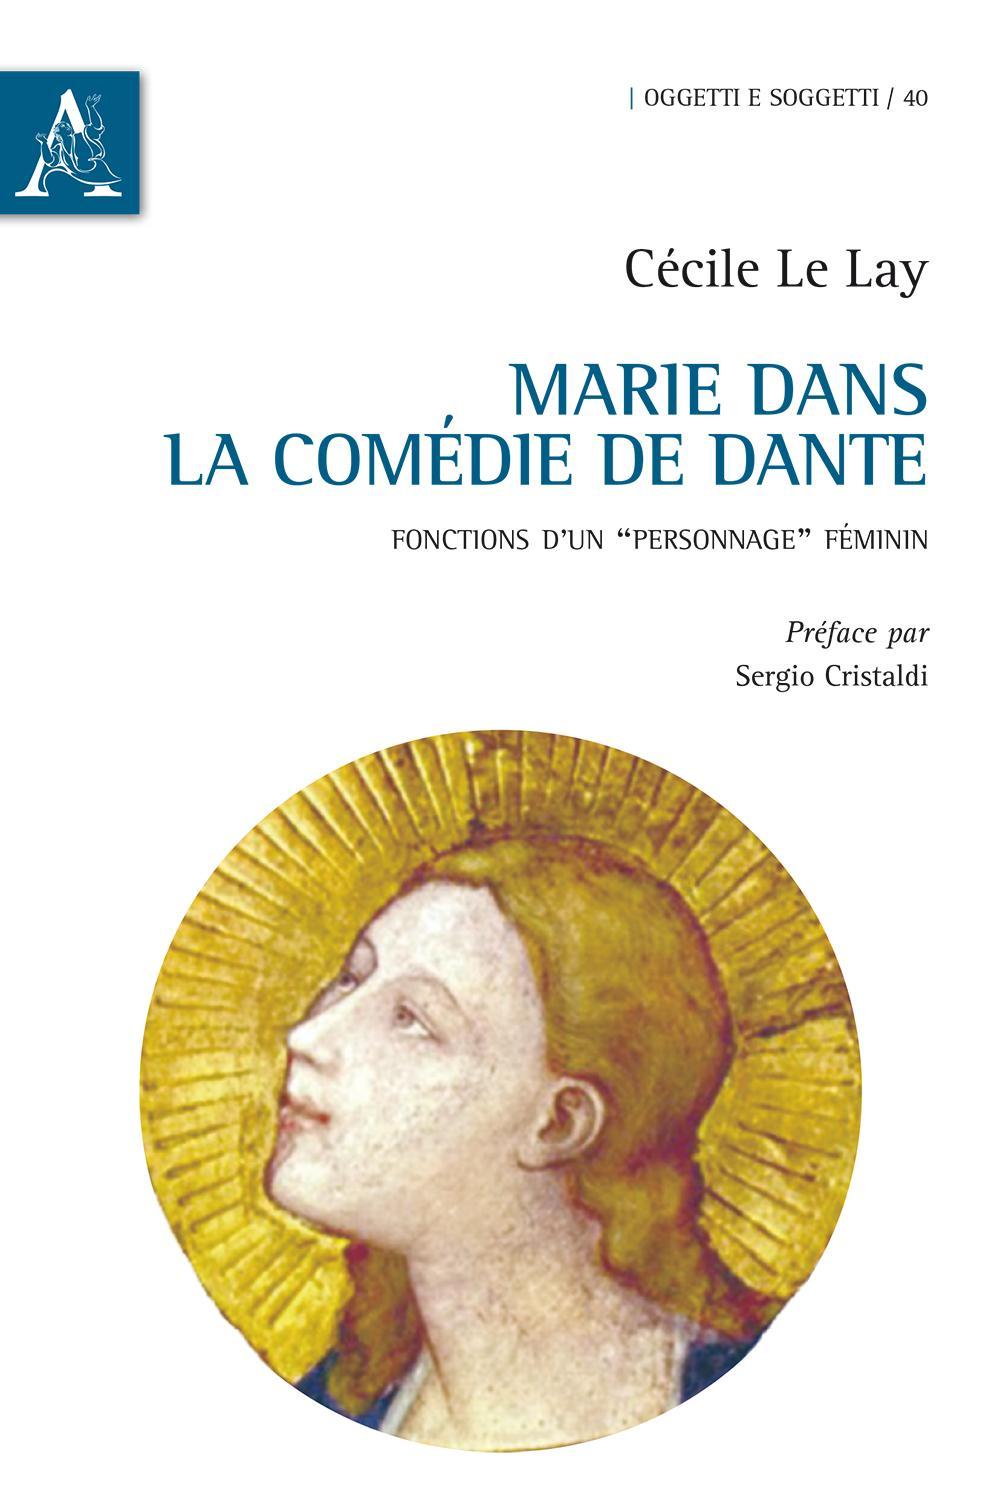 Libri Le Lay Cecile - Marie Dans La Comedie De Dante. Fonctions D'Un Personnage Feminin NUOVO SIGILLATO, EDIZIONE DEL 19/02/2016 SUBITO DISPONIBILE